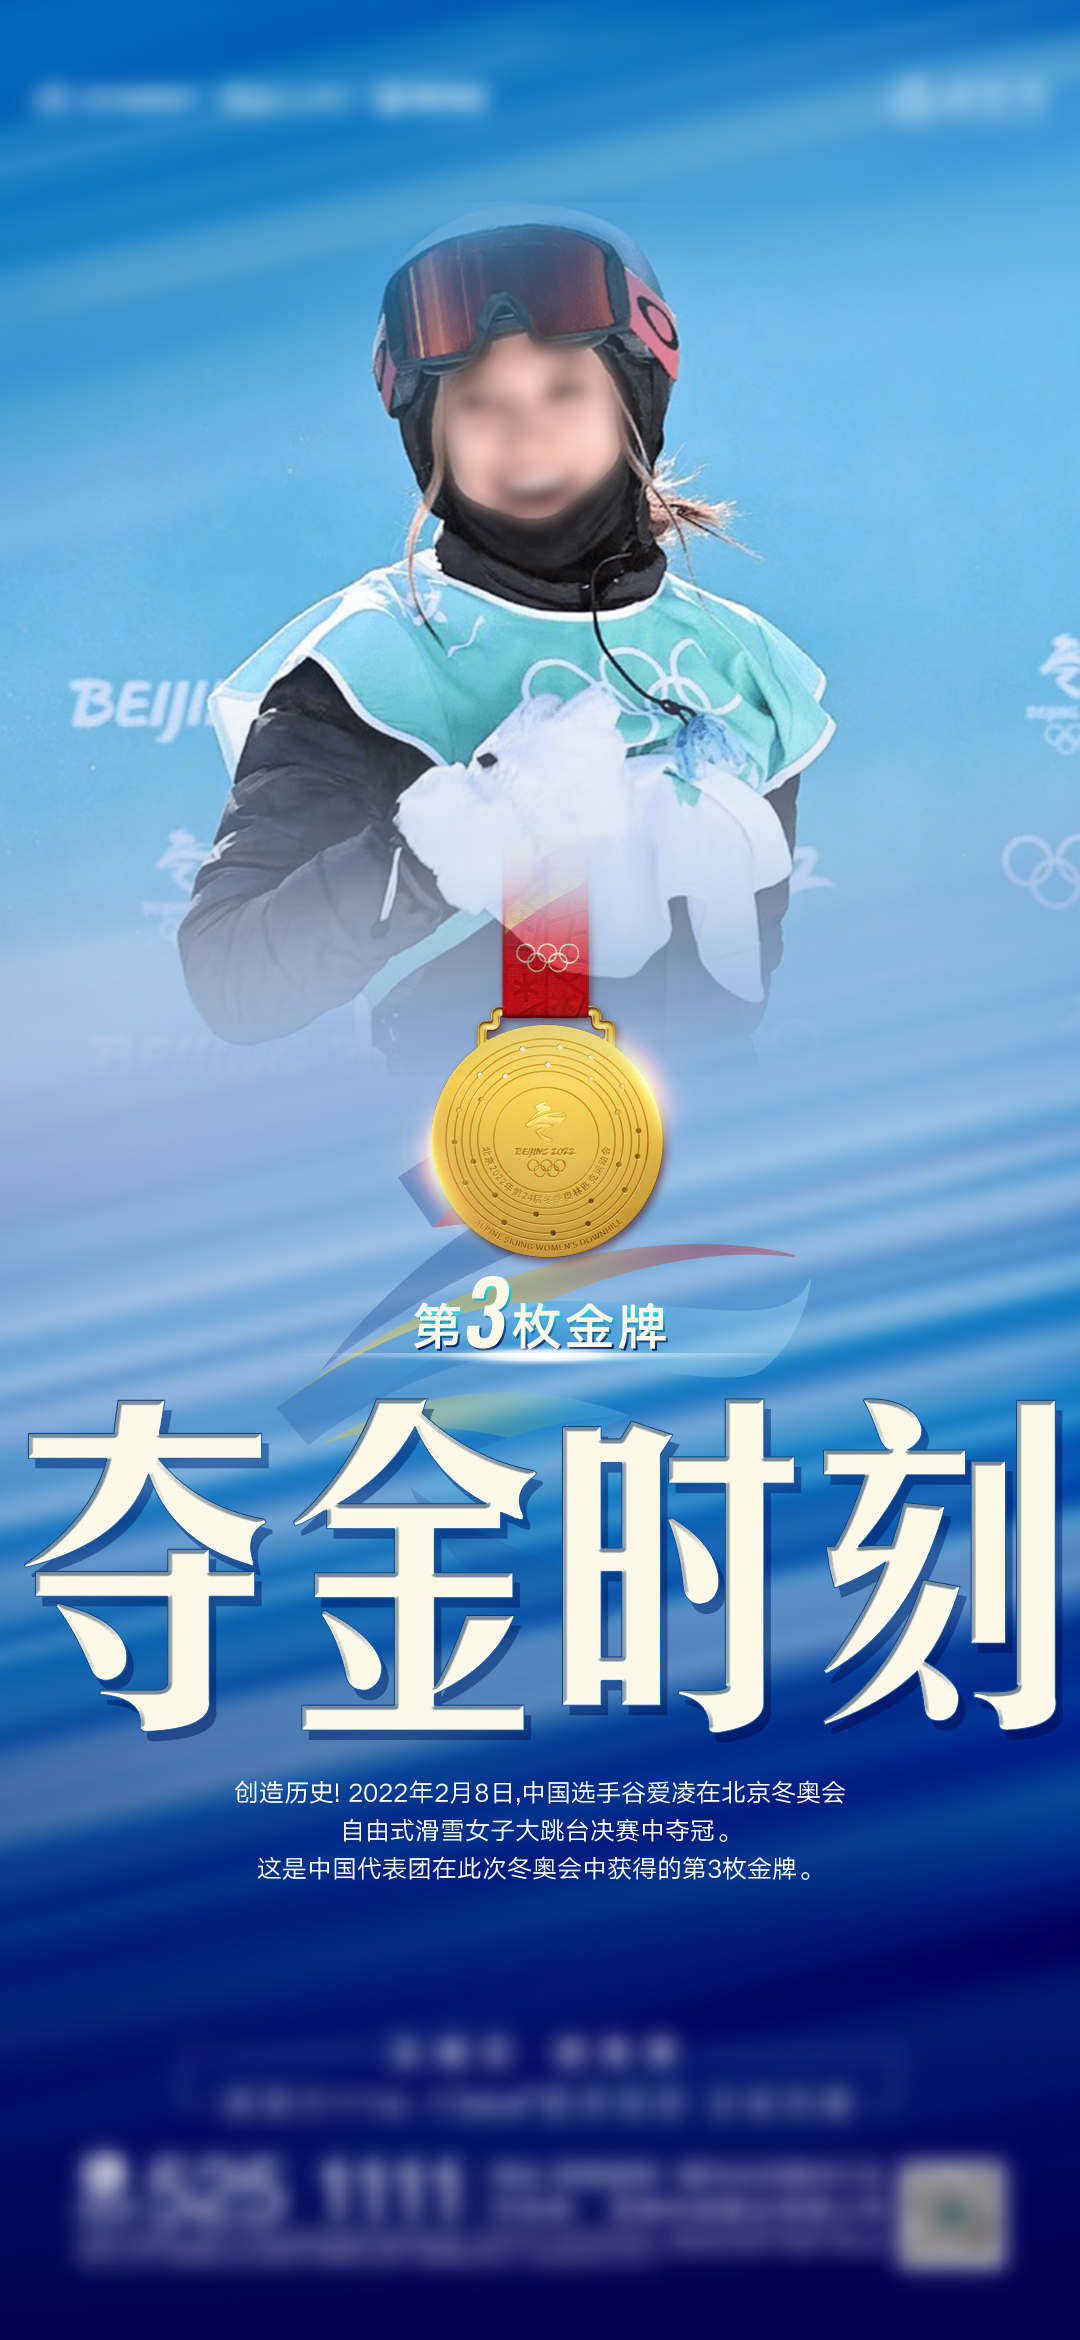 2022年中国冬奥金牌图片